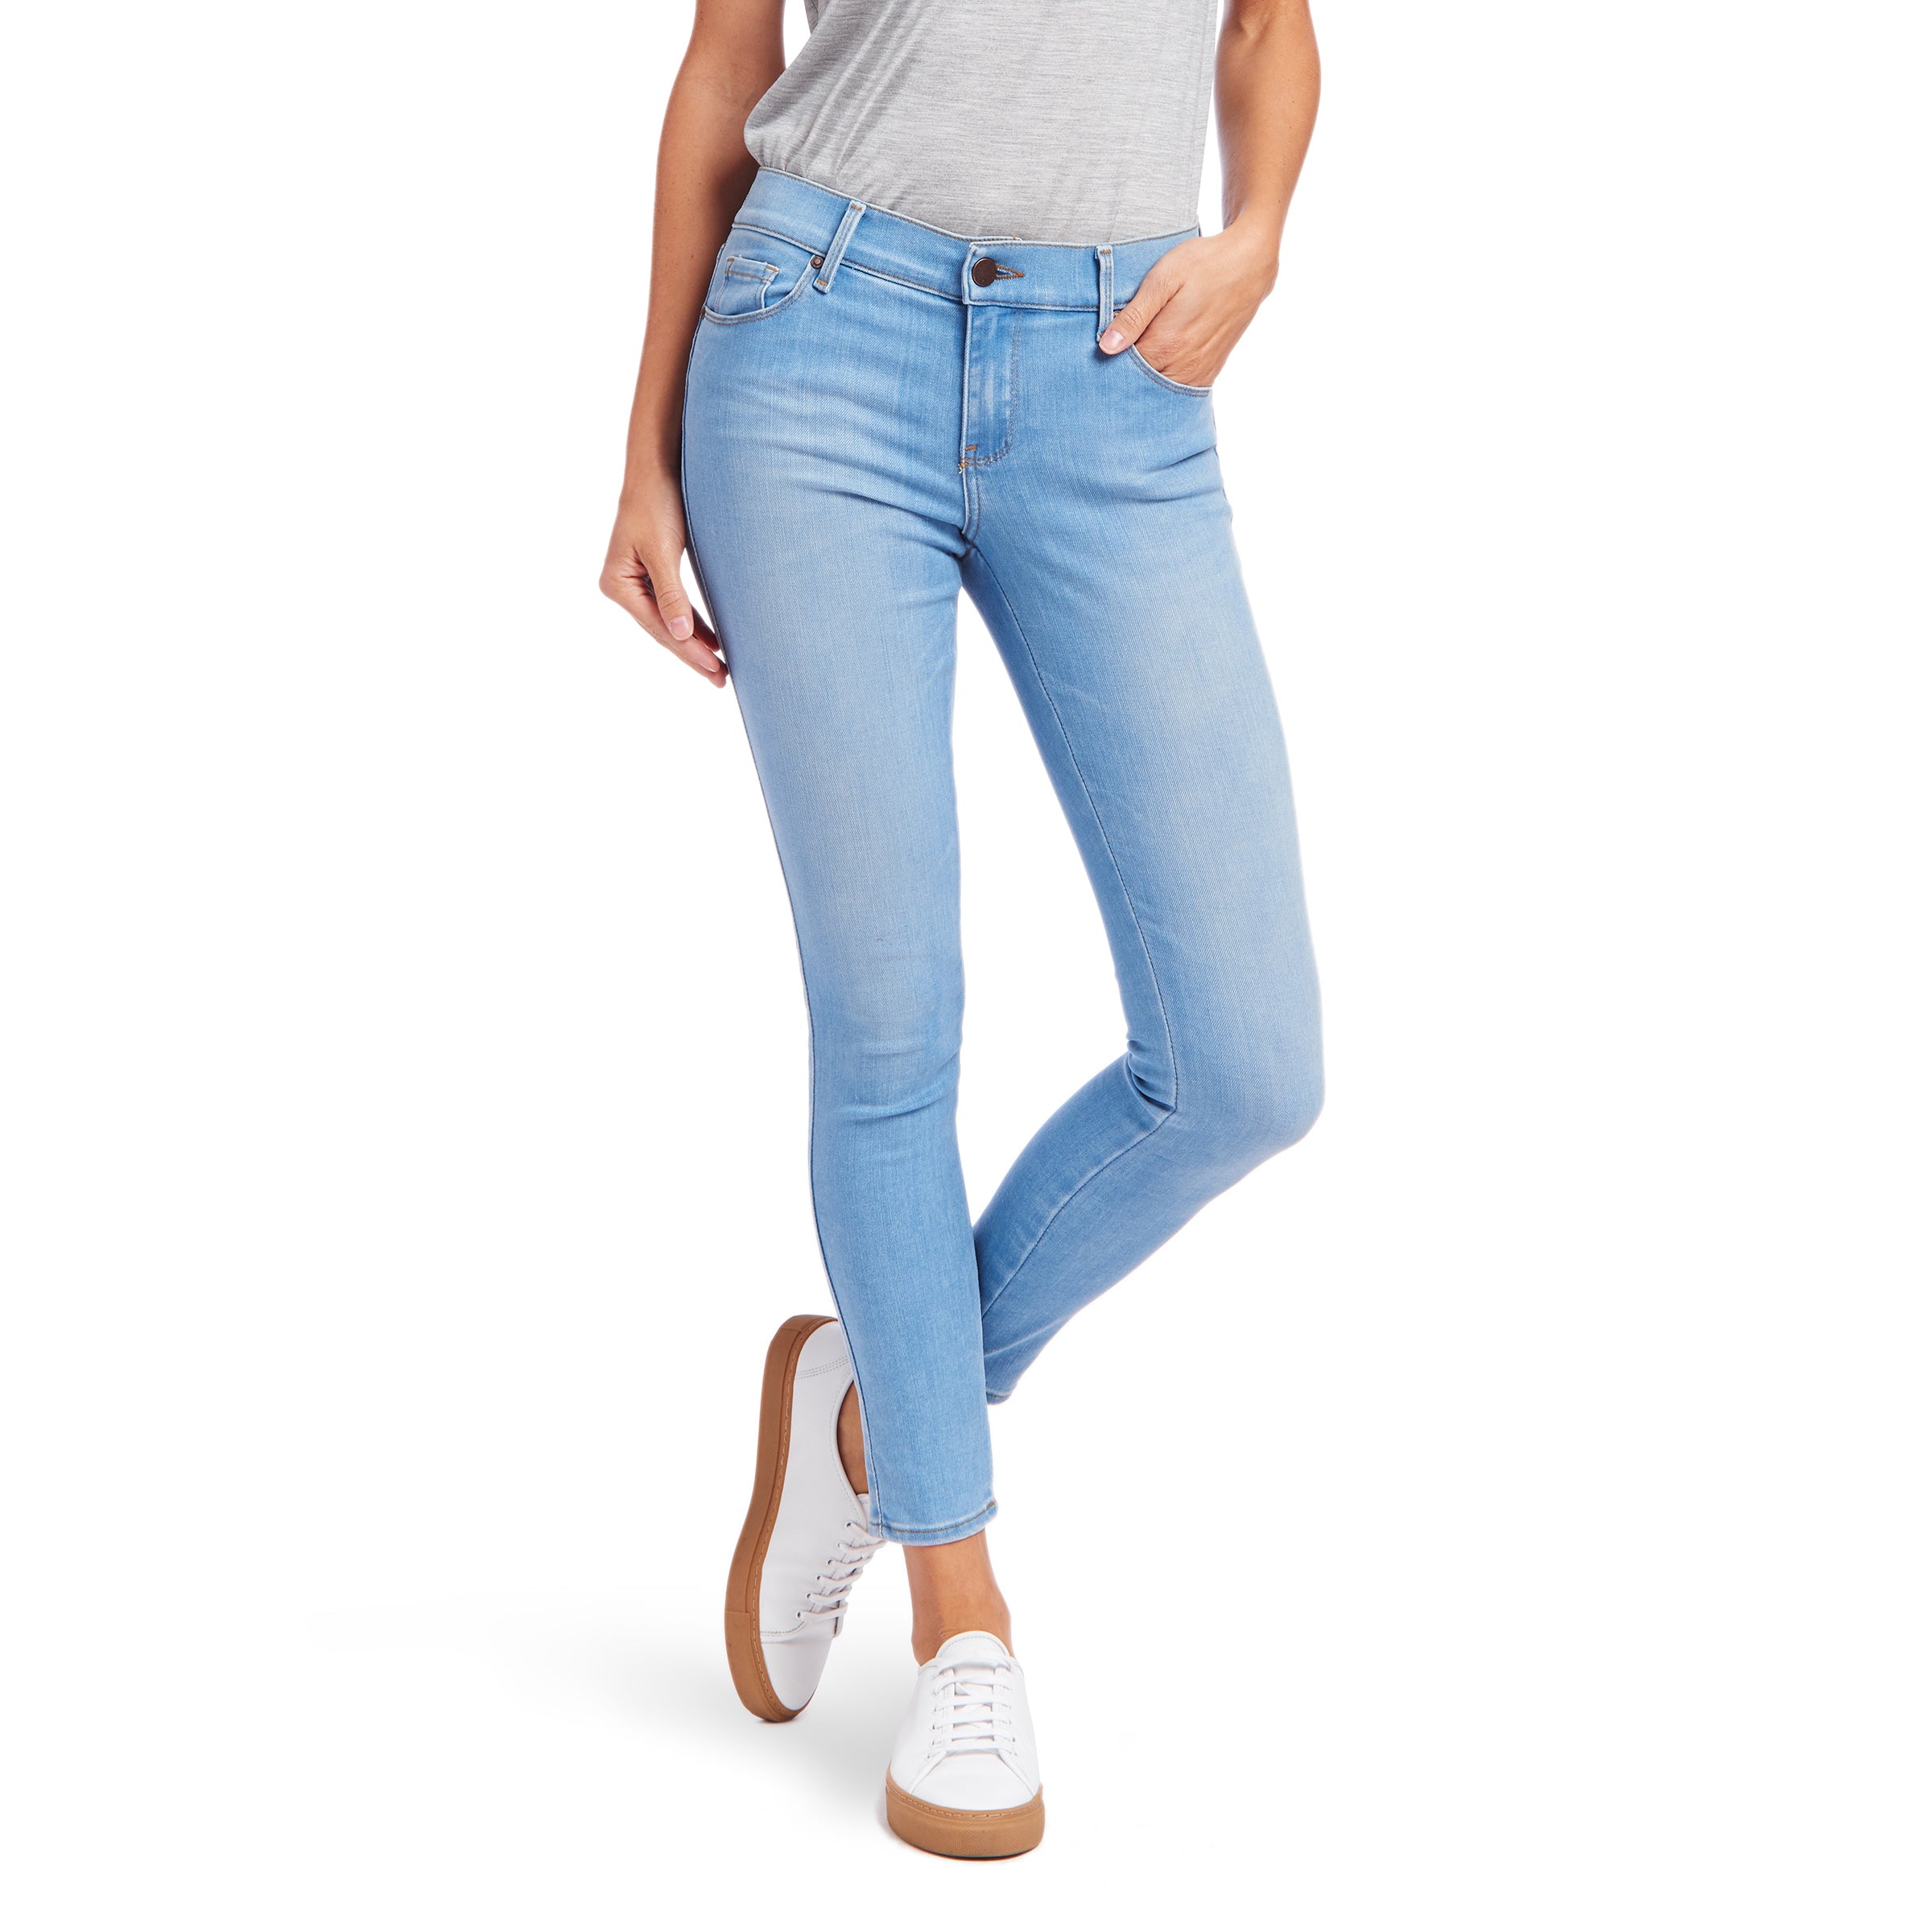 Tall Women Clothing | Dark Blue Tall Skinny Jeans | TallMoi